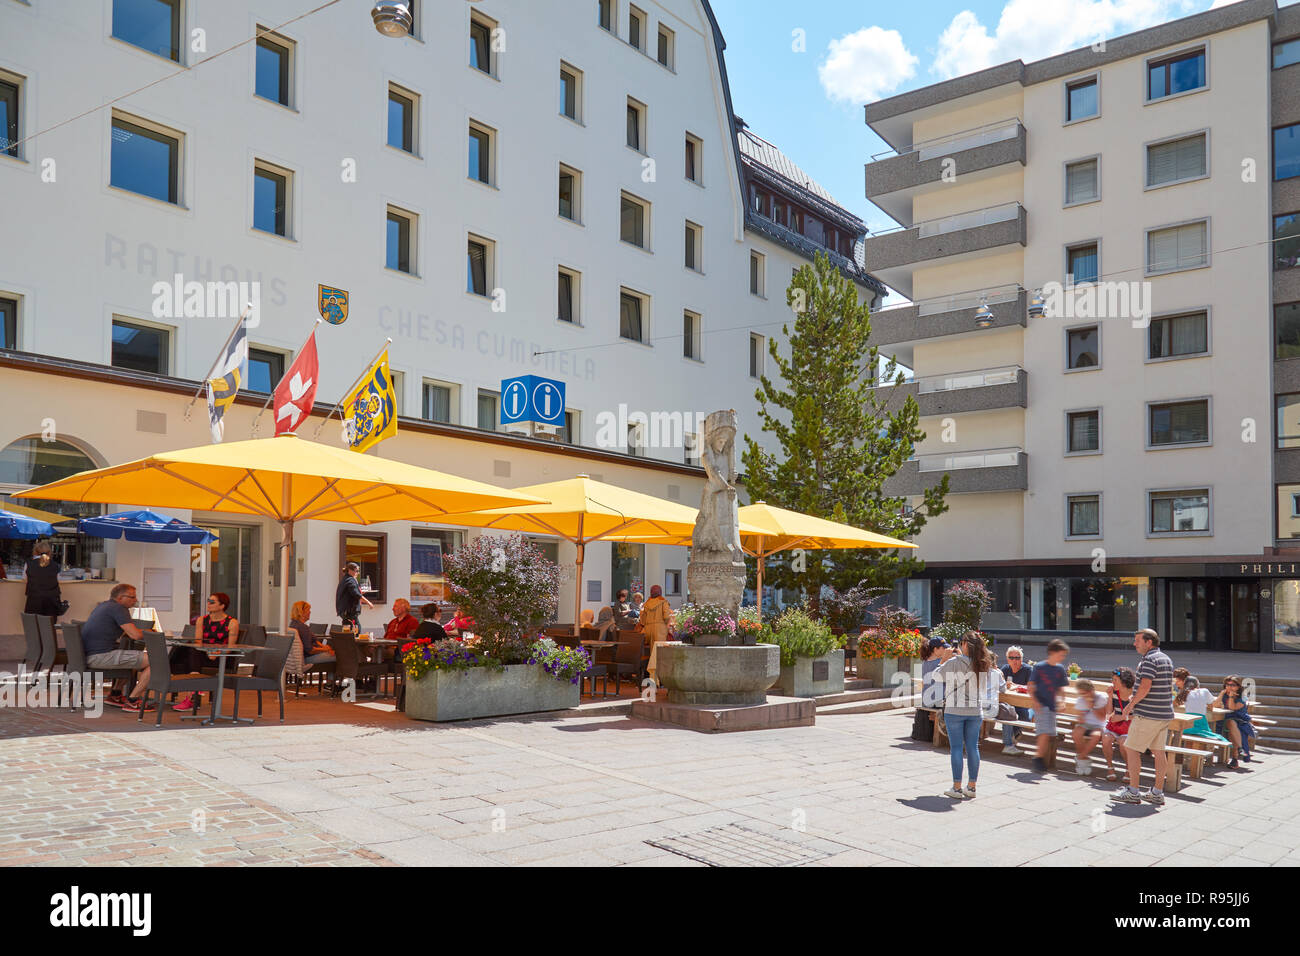 SANKT MORITZ, Suisse - le 16 août 2018 : Centre Ville avec trottoir tables, parasols jaunes et des personnes dans un jour d'été ensoleillé à Sankt Moritz, Suisse Banque D'Images